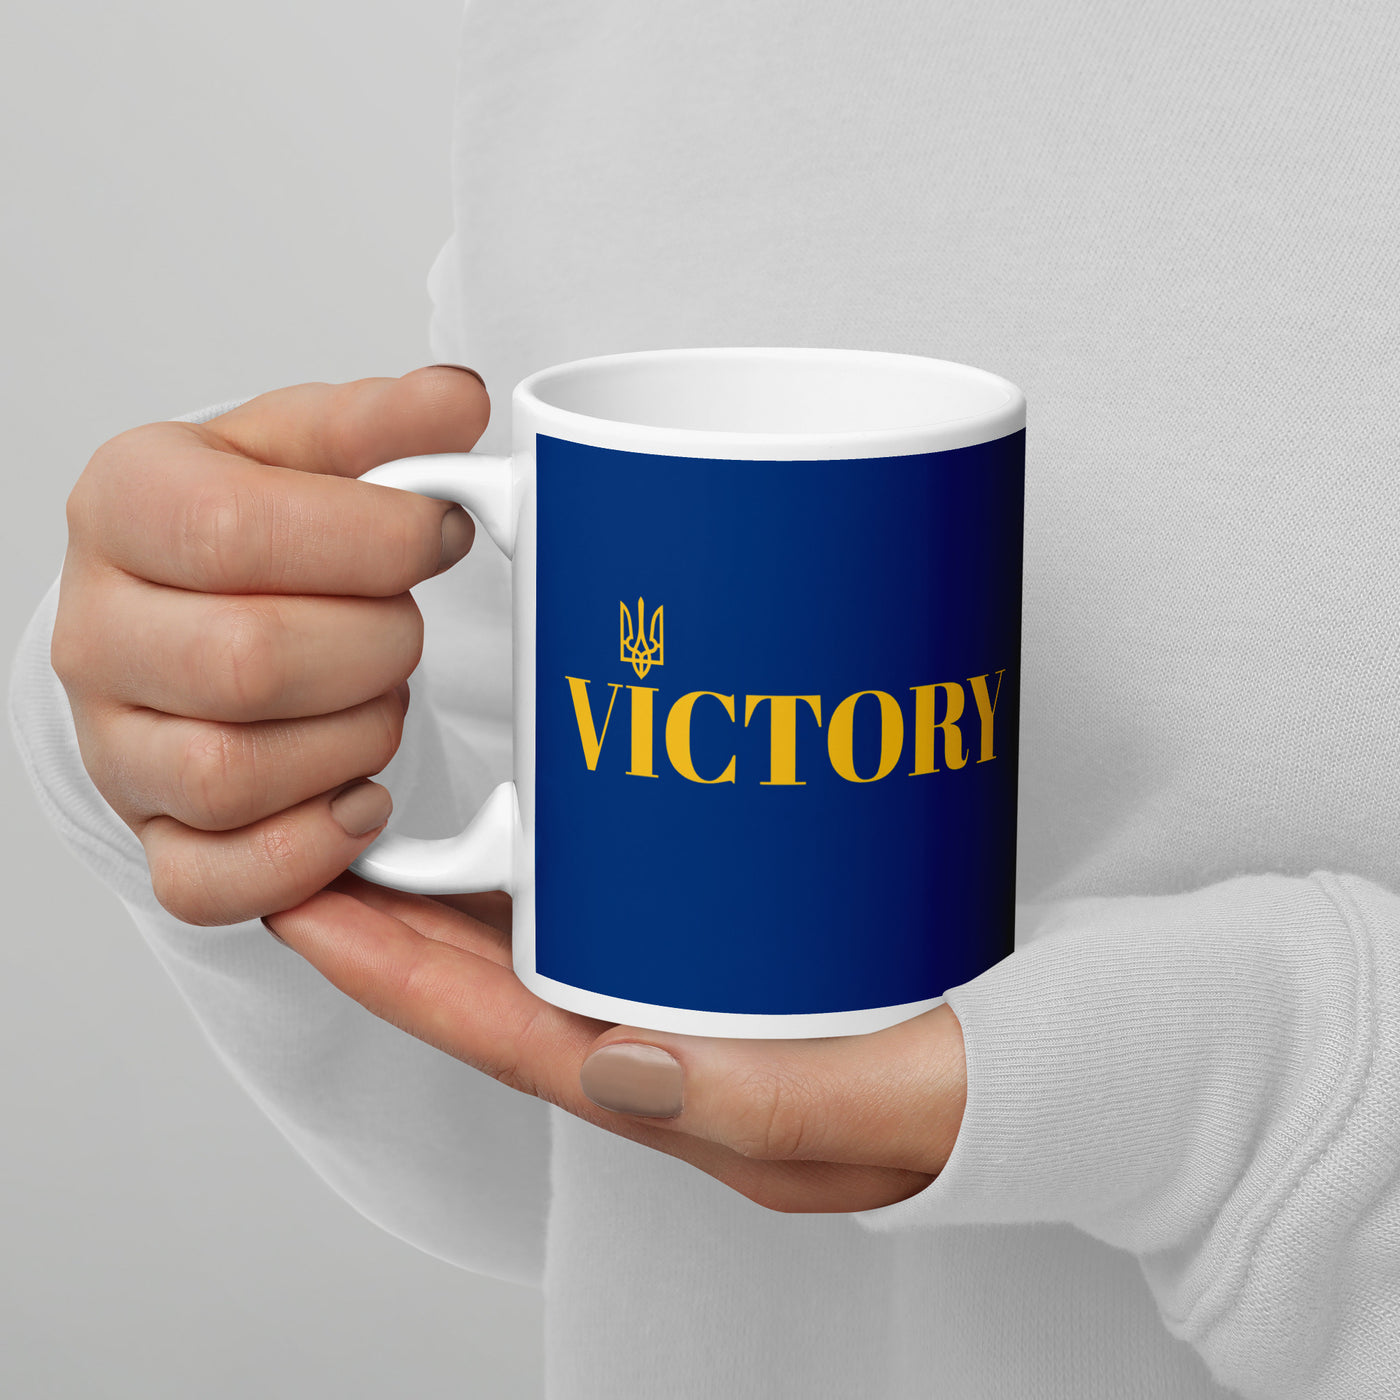 Victory mug